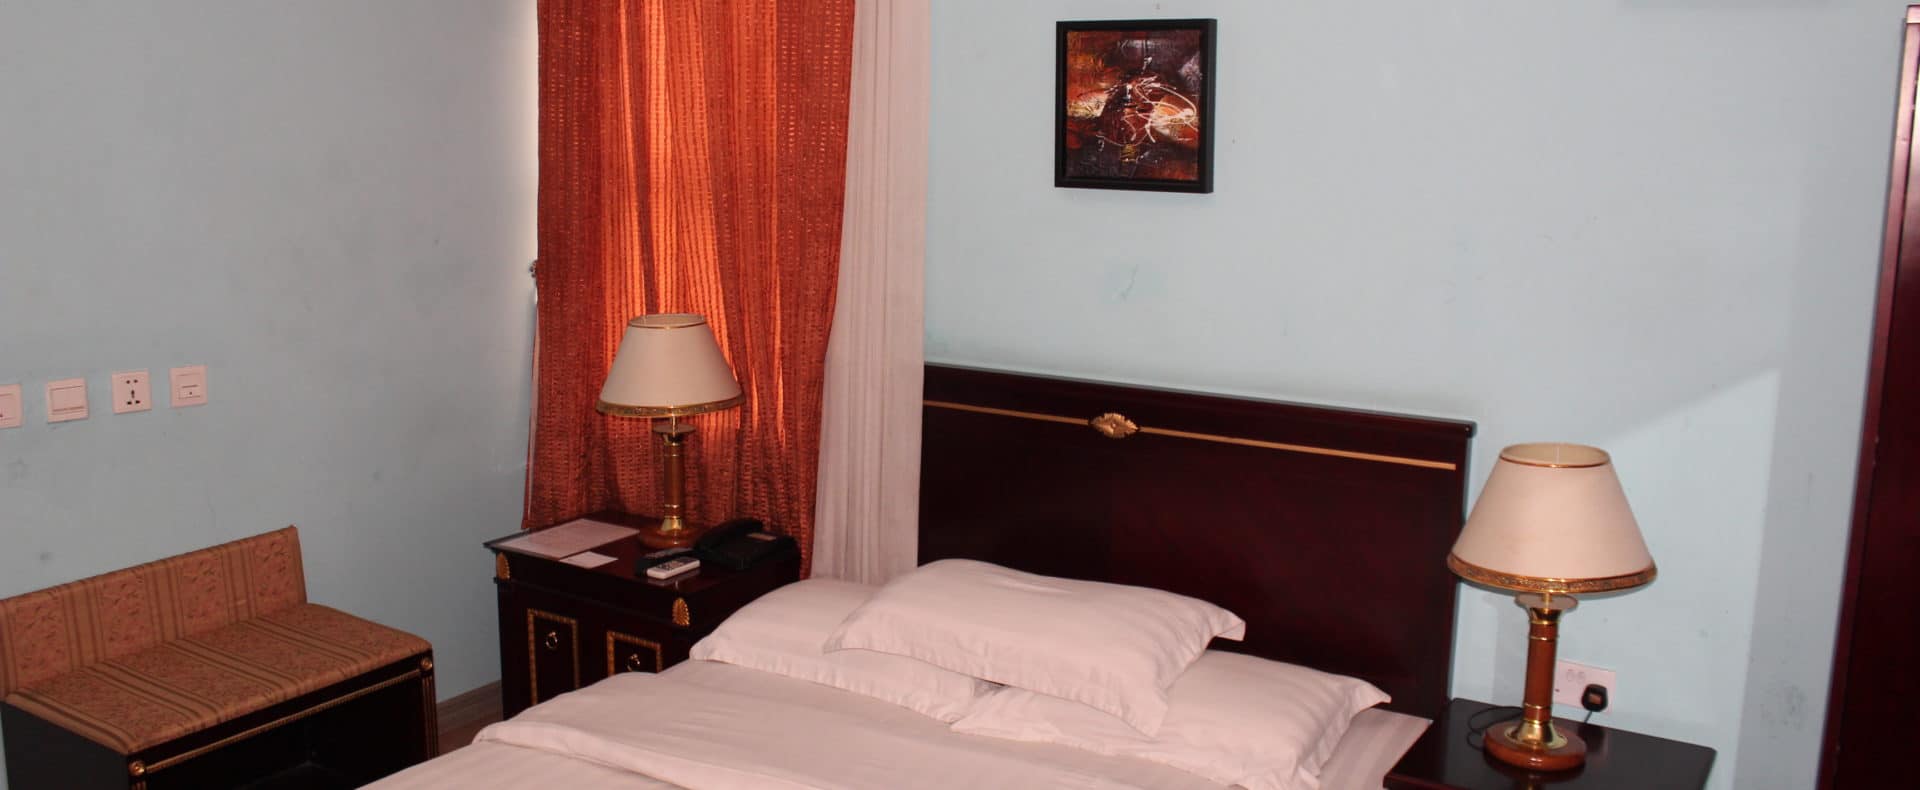 Hotel Superior Room In Calabar Nigeria